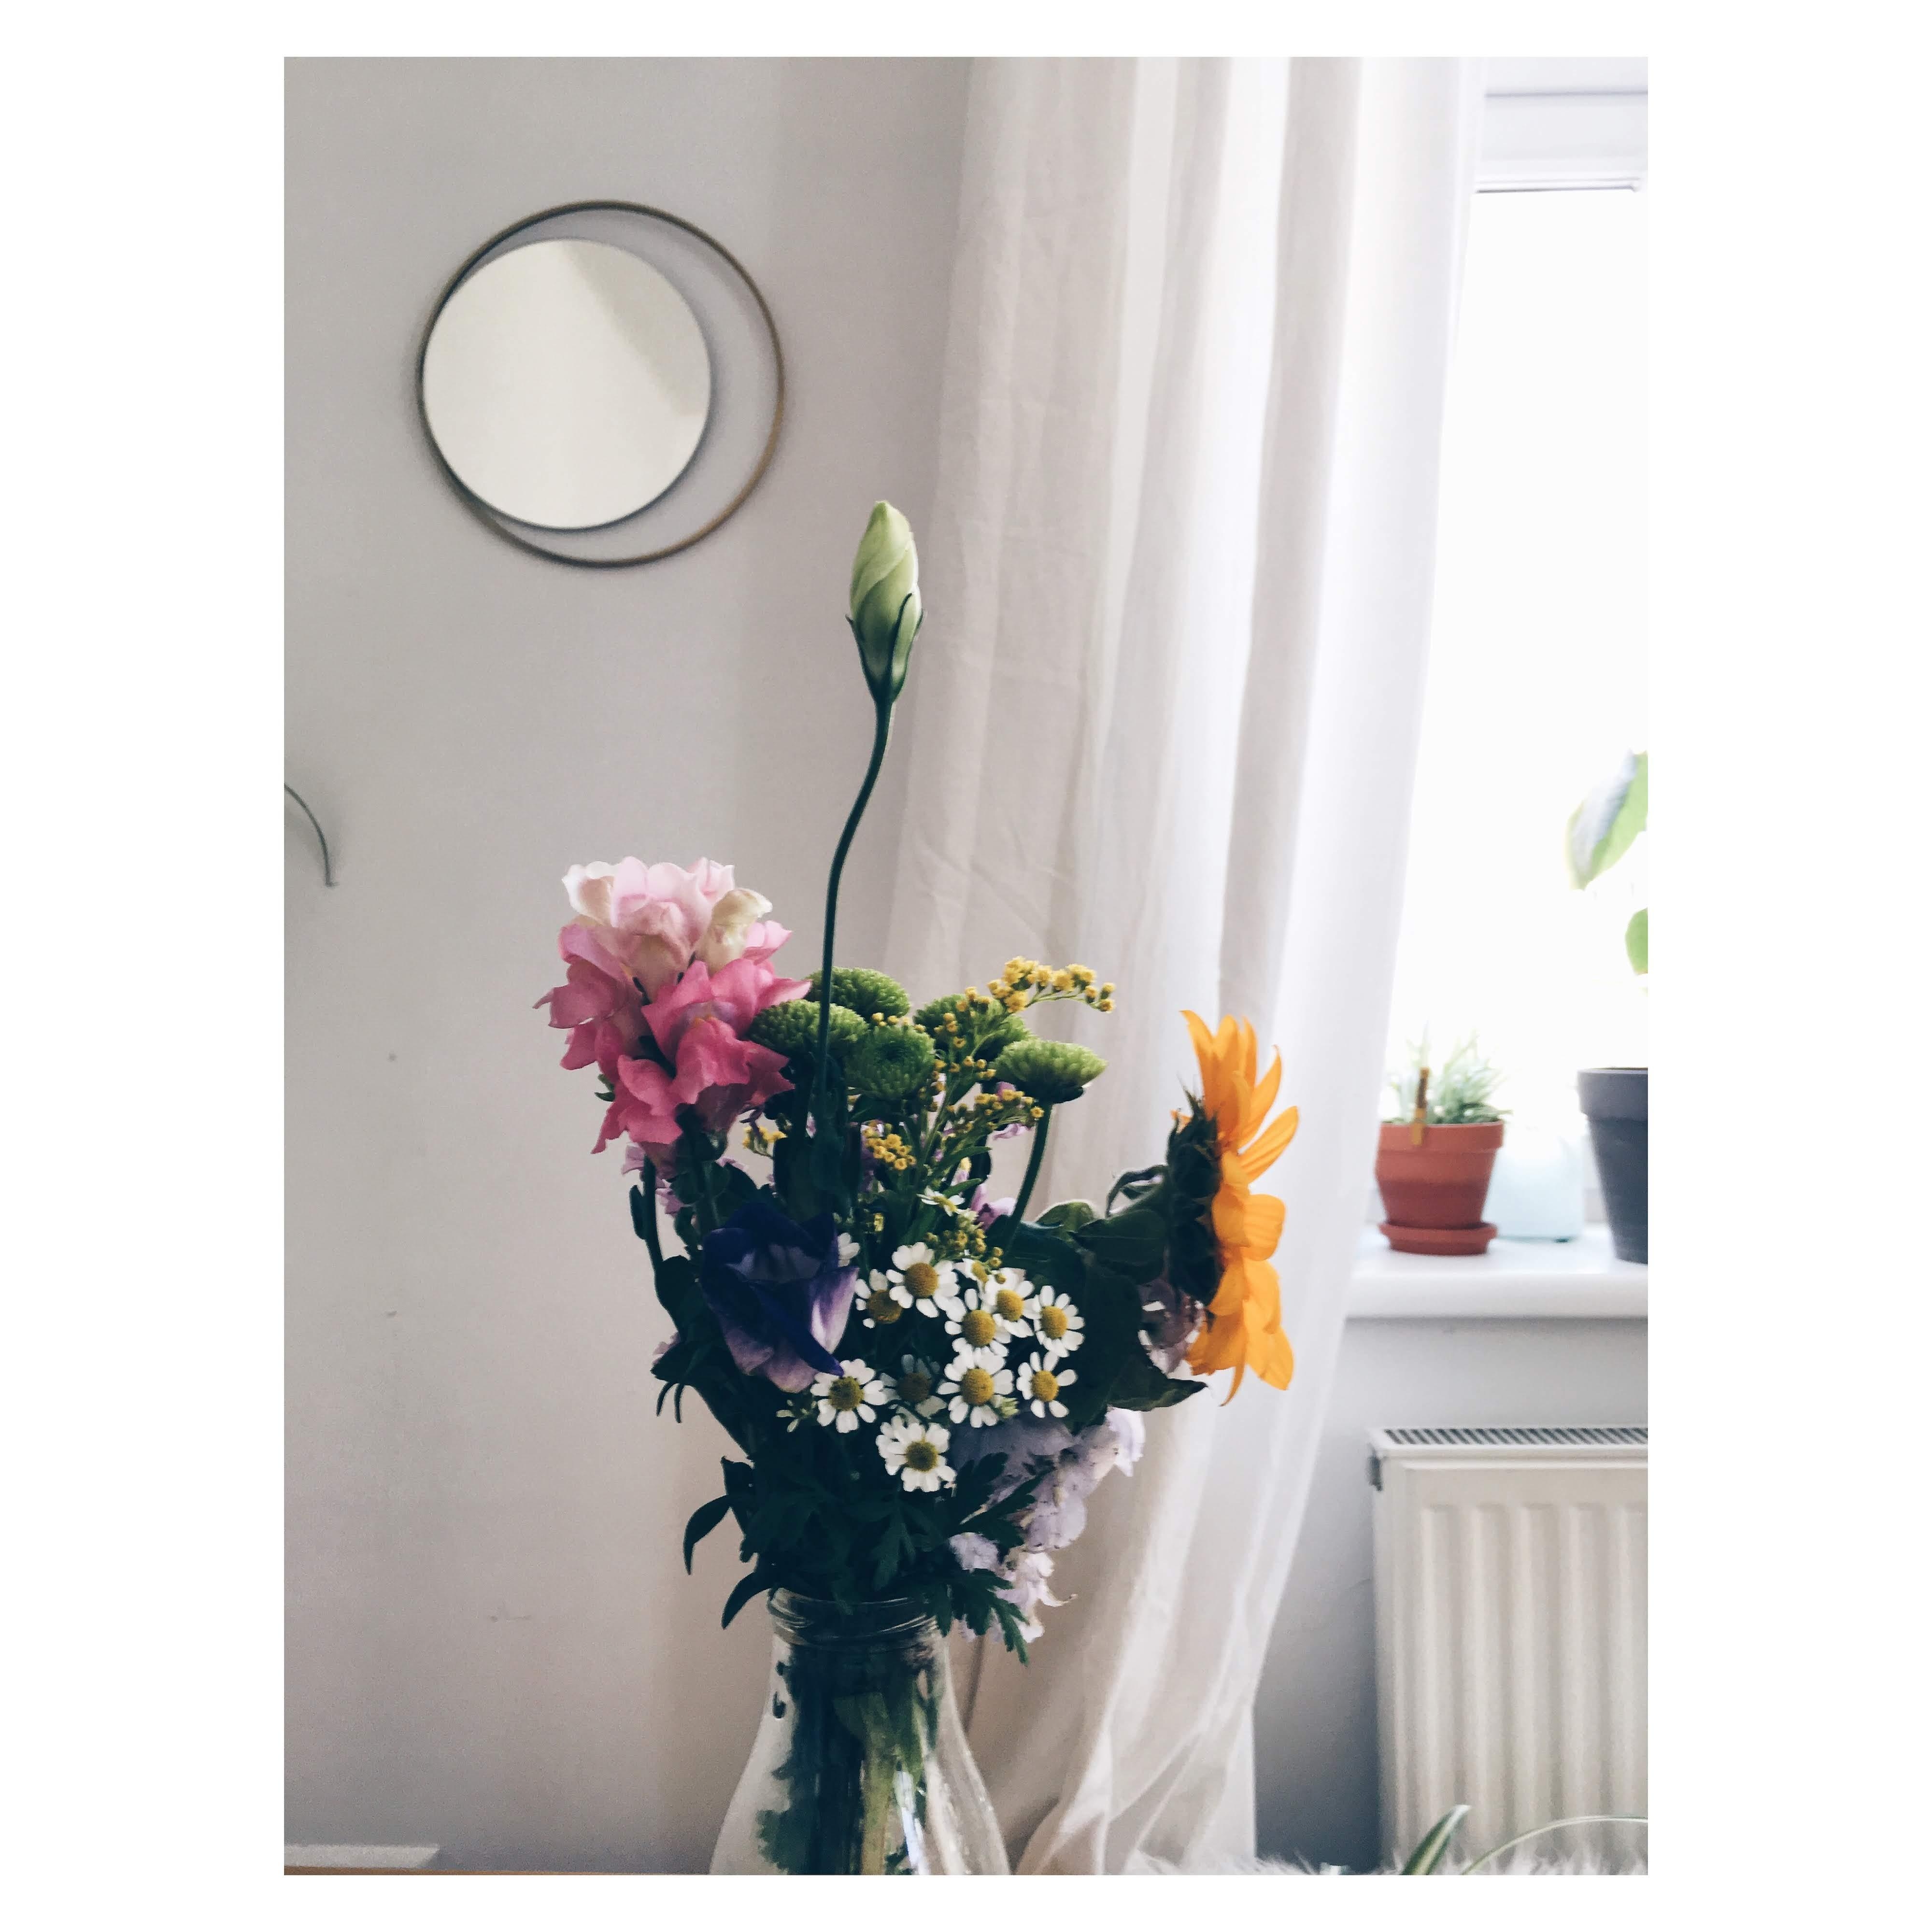 Die Blumenliebe ist hier ganz groß #couchliebe #blumenliebe #kaffeemagichauch